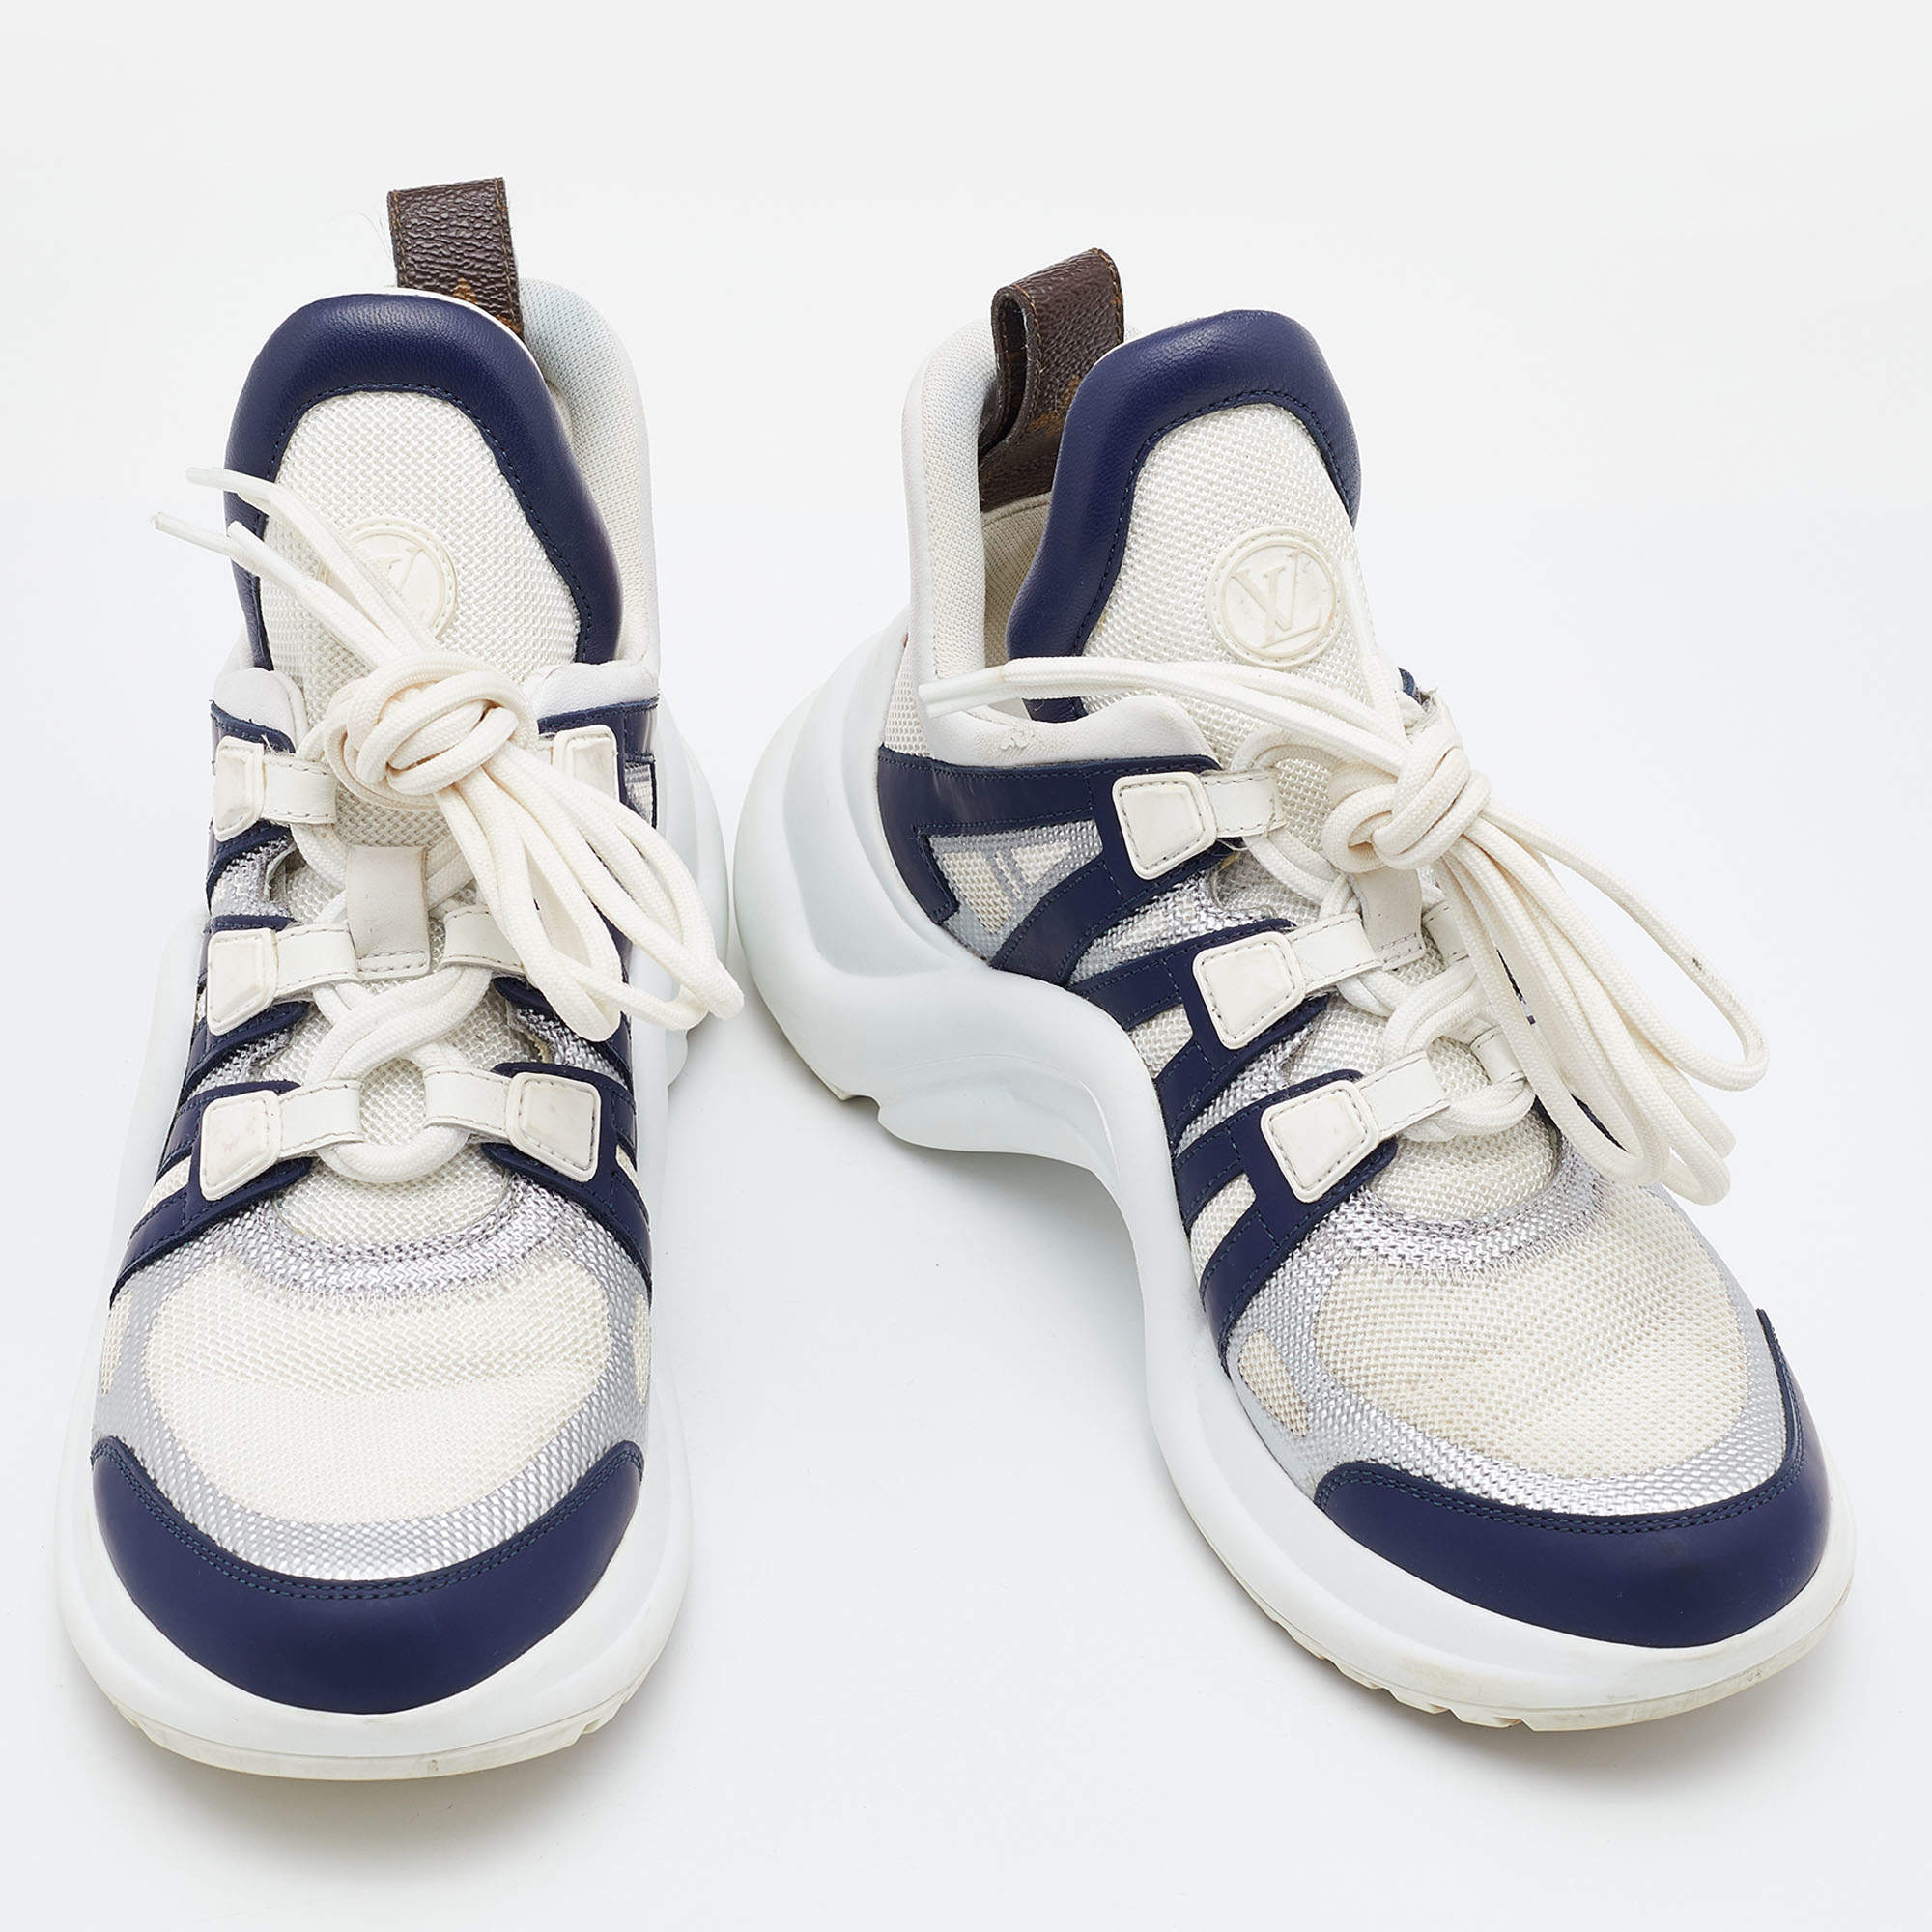 Louis Vuitton, Shoes, Louise Vuitton Archlight Sneakers Size 365